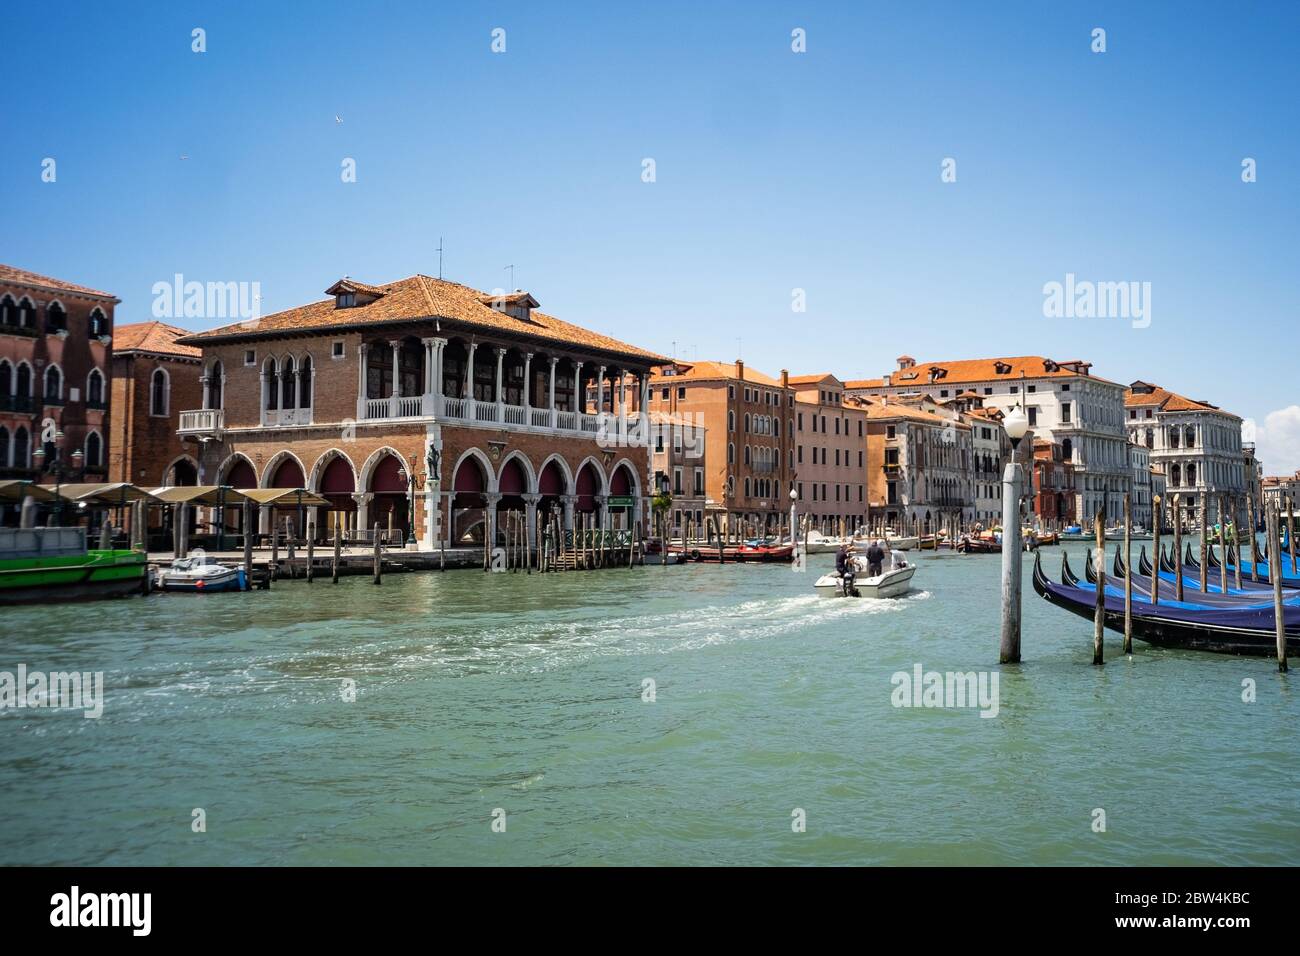 VENEZIA, ITALIA - MAGGIO 2020: Il mercato di Rialto e il Canal Grande con gondole subito dopo la riapertura della città dopo il blocco per i Coronavi Foto Stock